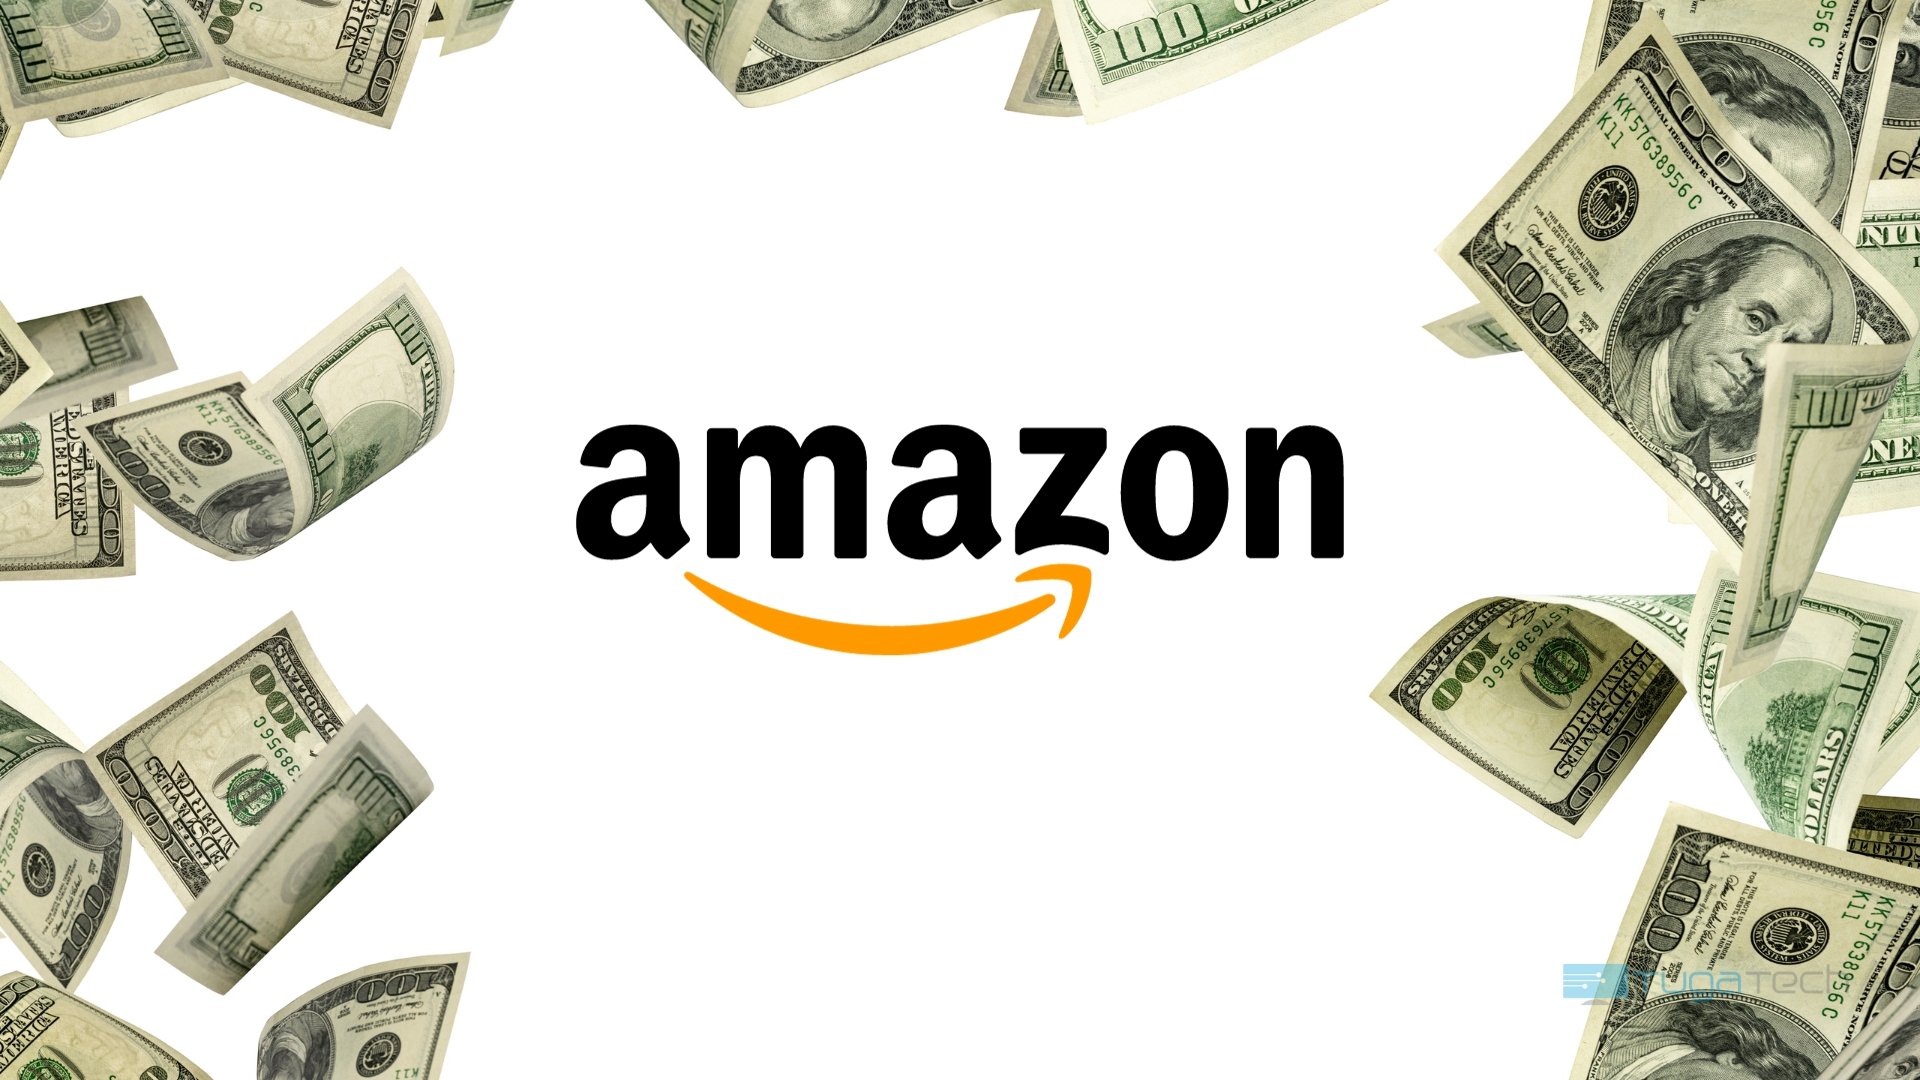 Amazon teria algoritmo secreto para inflacionar os preços dos produtos